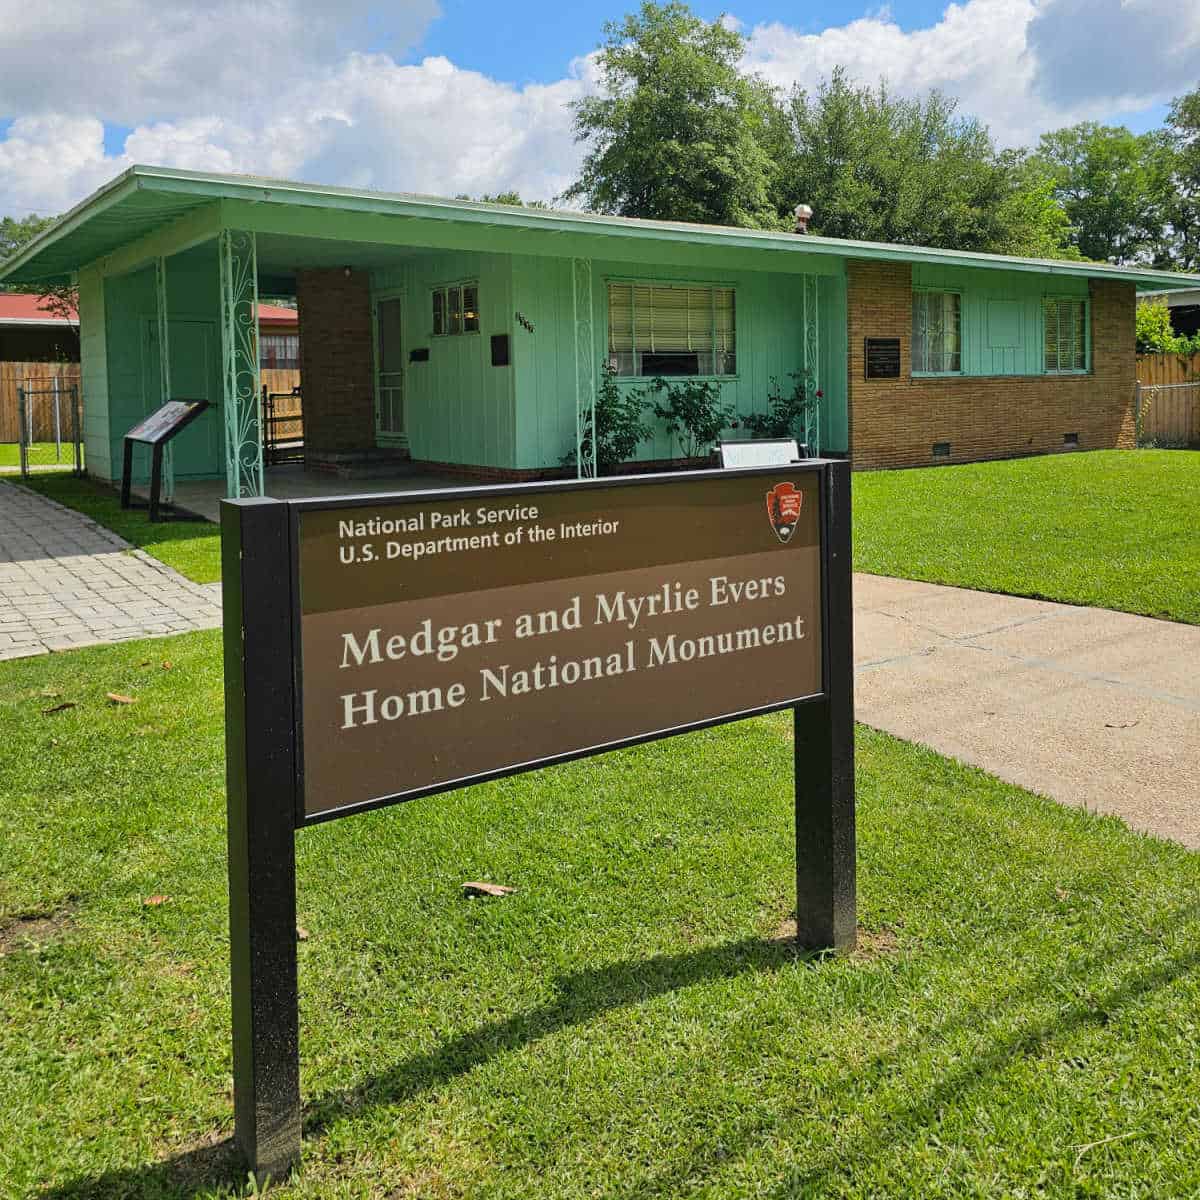 Medgar and Myrlie Evers Home National Monument